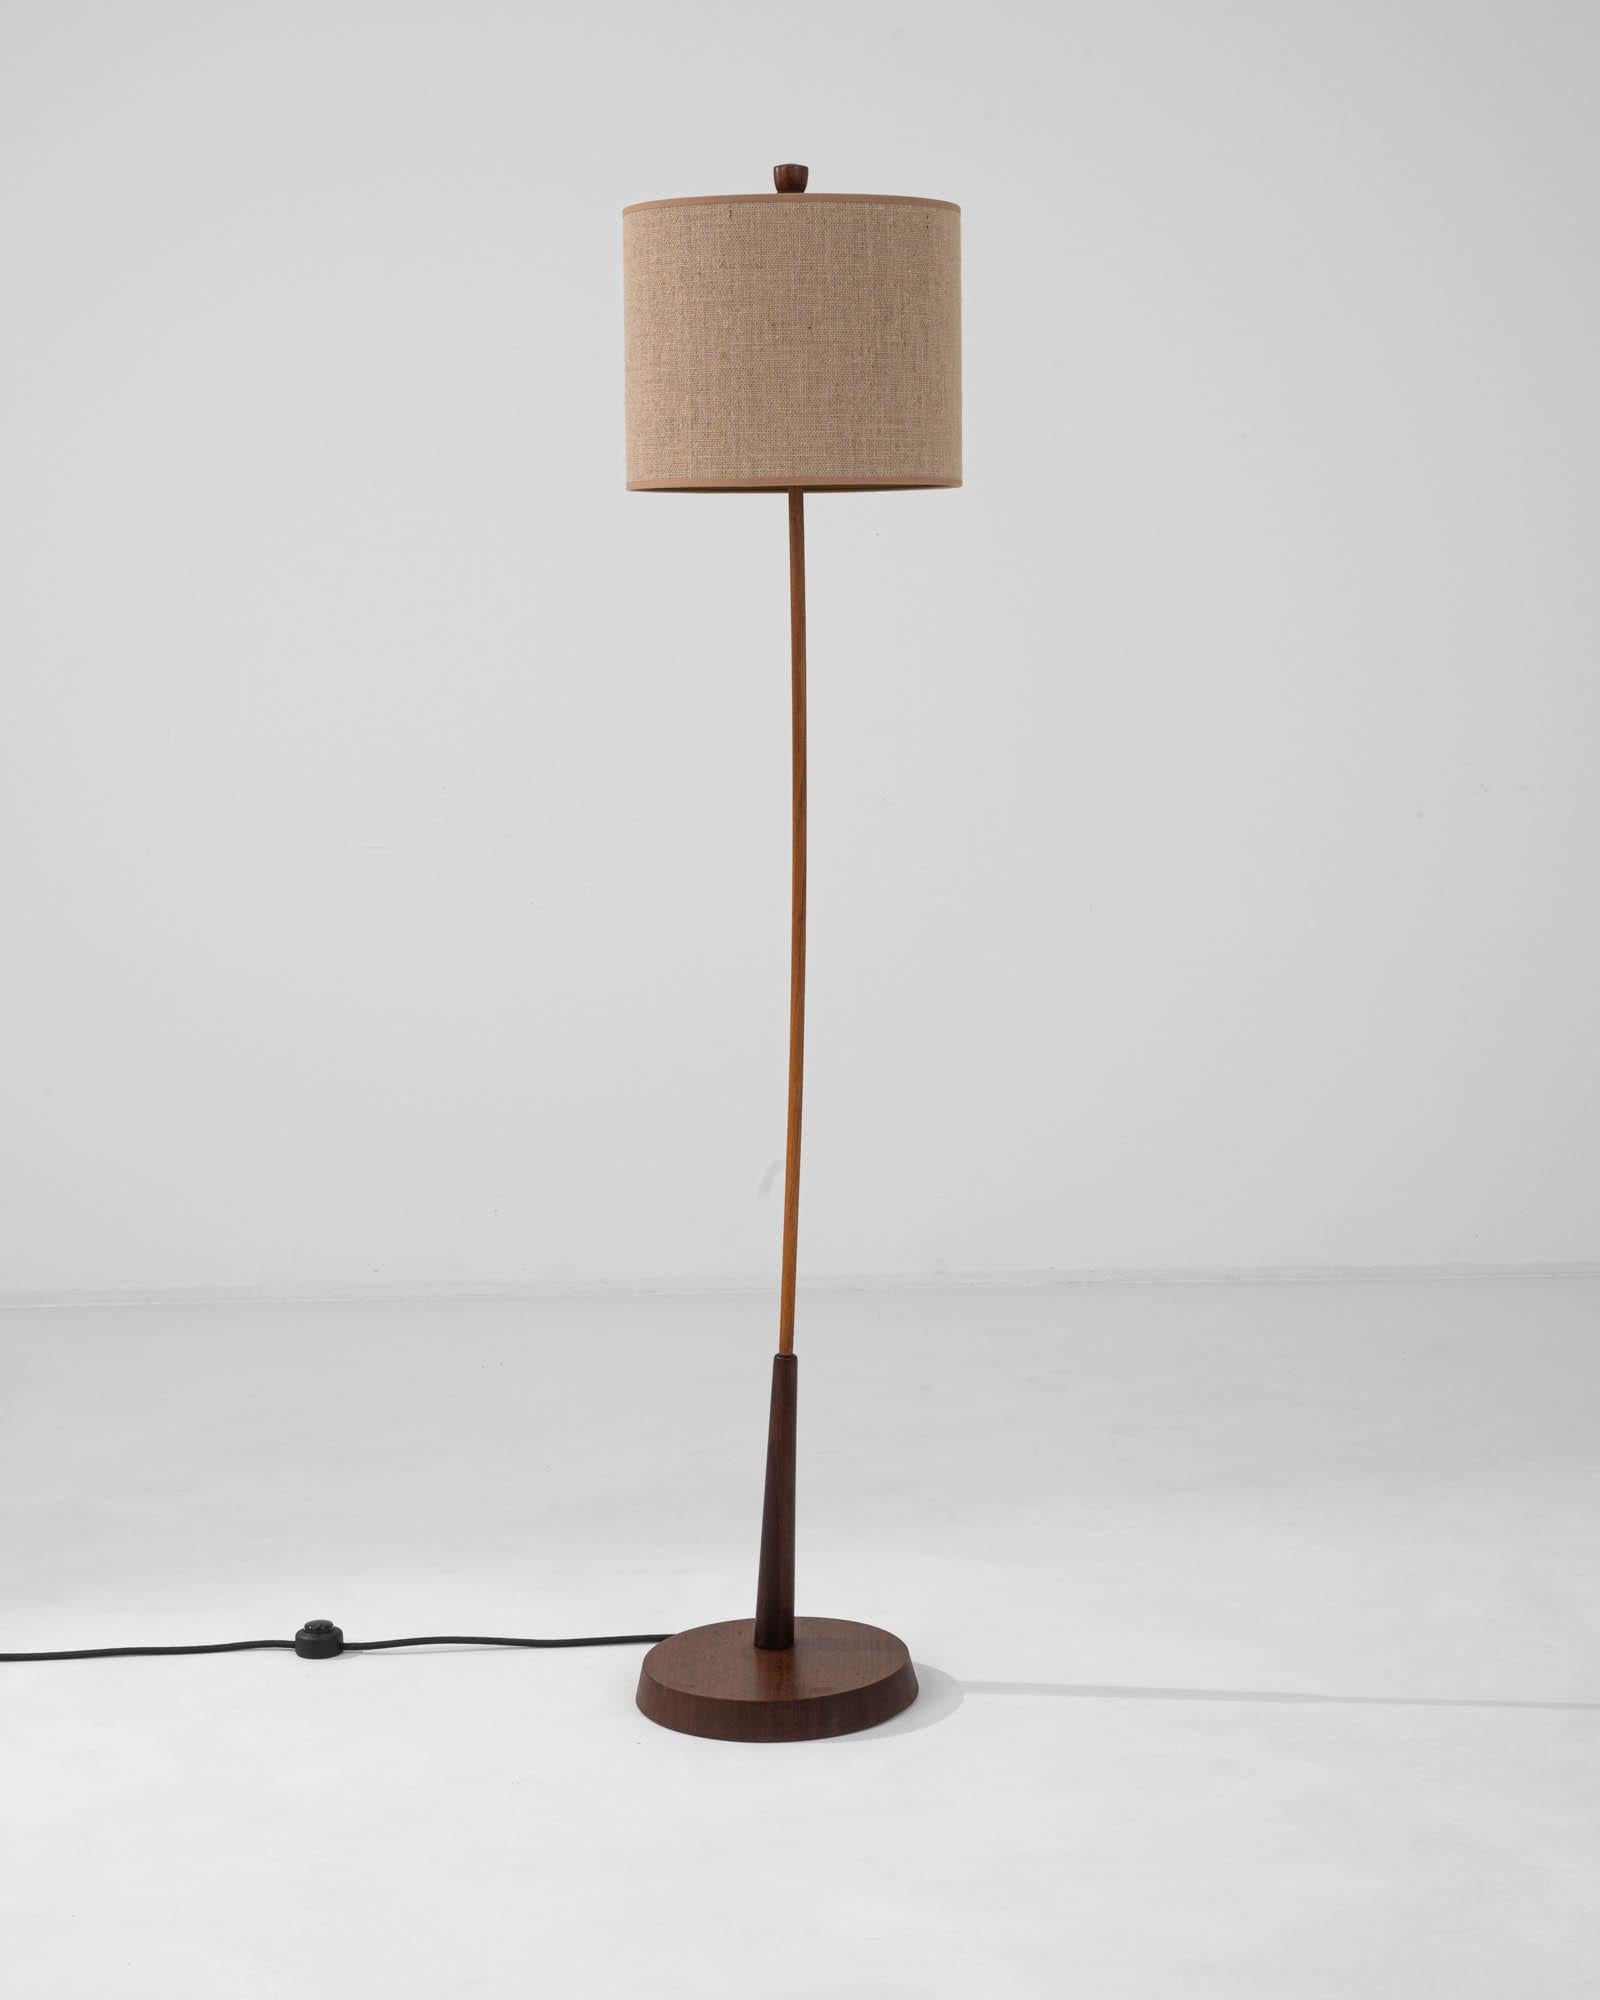 Illuminez votre espace de vie avec l'élégance discrète de ce lampadaire danois en bois du XXe siècle. Méticuleusement fabriquée, cette lampe se dresse sur une base de bois riche, teinté foncé, qui met en valeur la beauté naturelle de son grain. Le